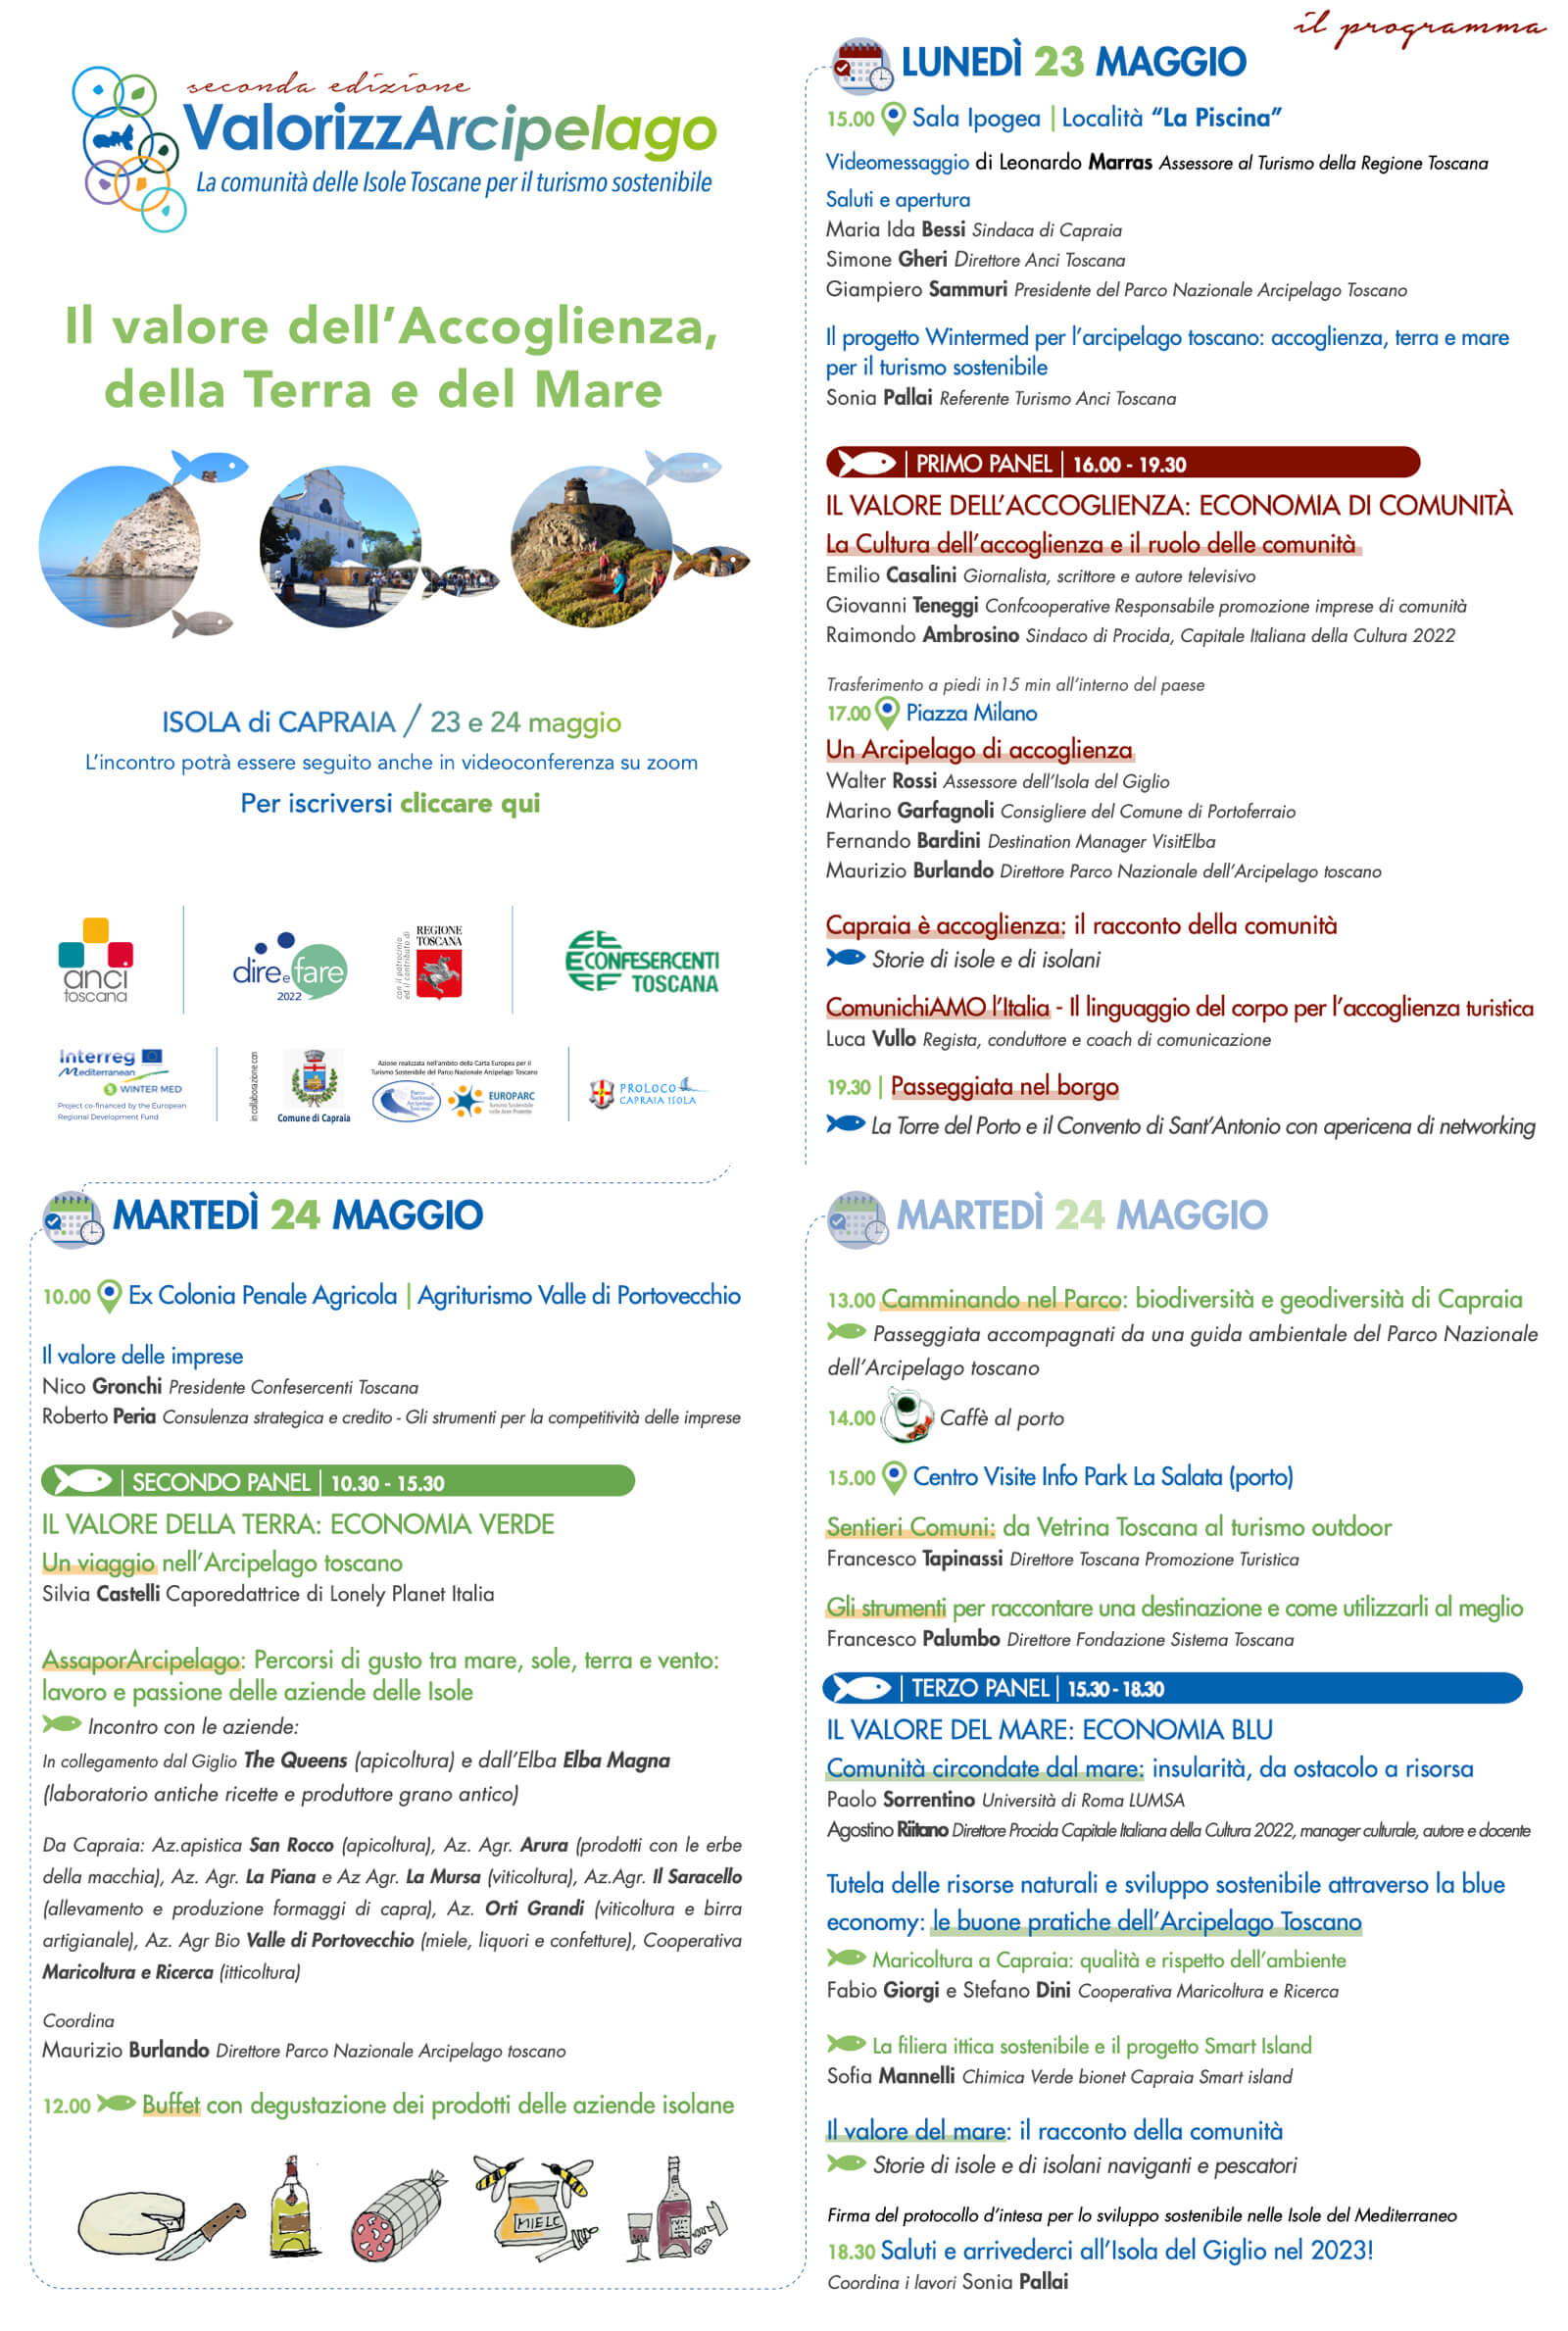 Programma ValorizzArcipelago II Edizione 23-24 maggio 2022 all'Isola di Capraia